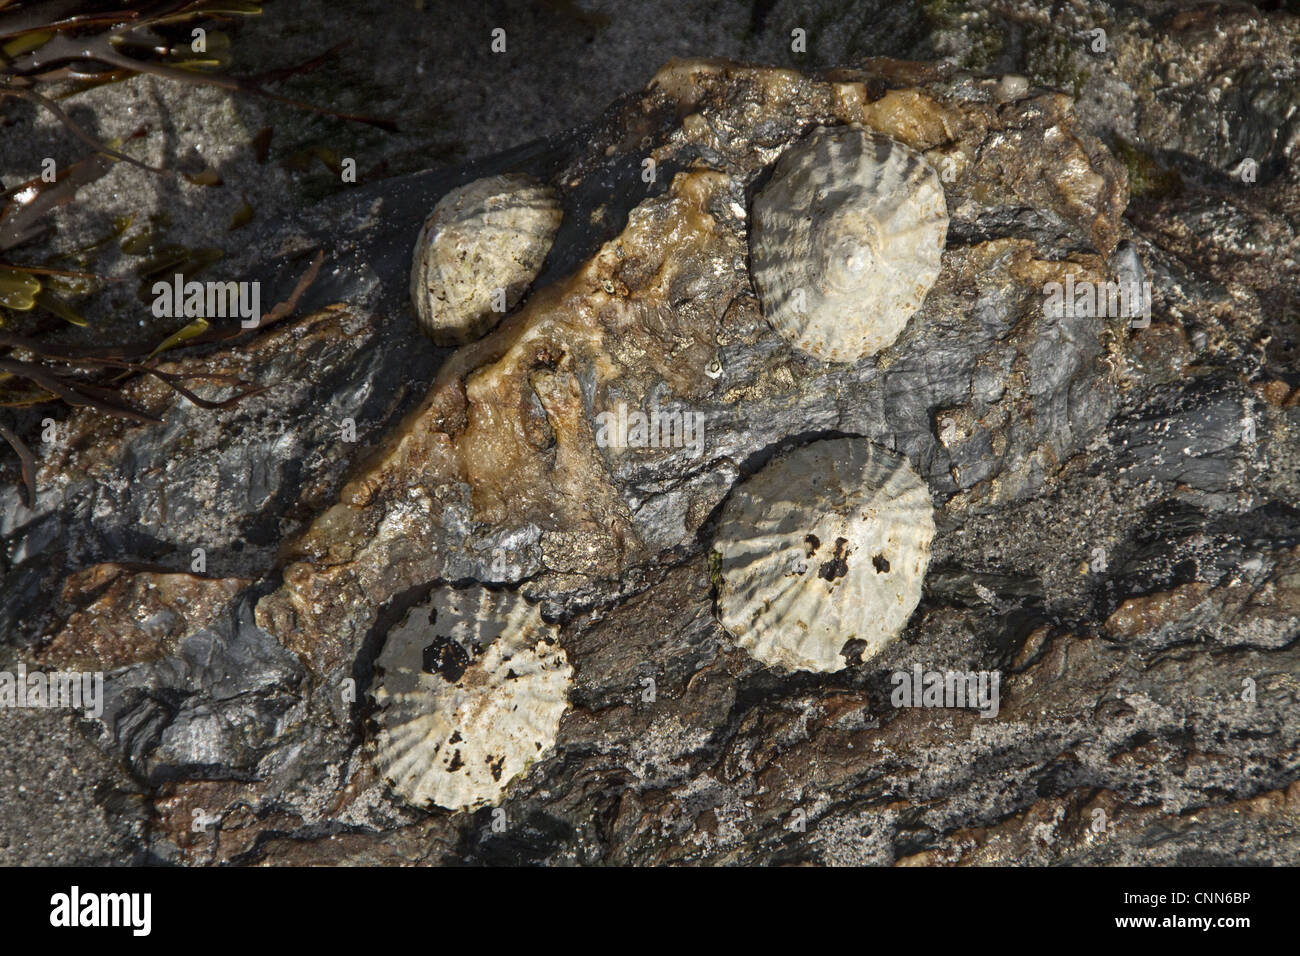 Die "gemeinsame Limpet" essbare Arten Meeresschnecke Kiemen typische wahre Limpet marine Gastropode Molluske in Familie Patellidae. Stockfoto